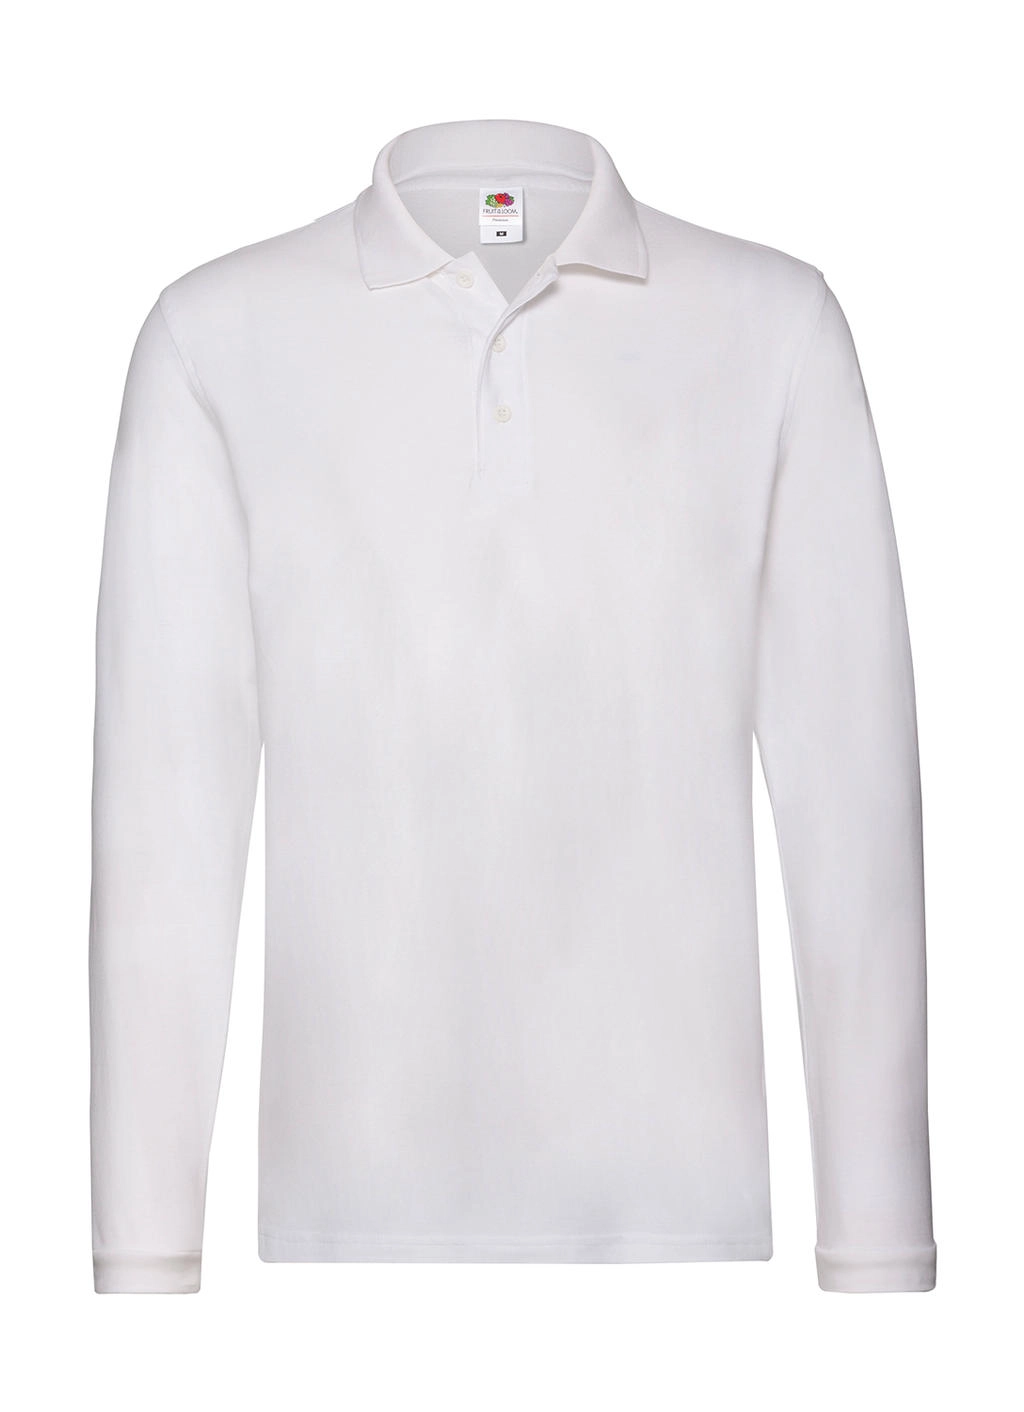 Premium Long Sleeve Polo zum Besticken und Bedrucken in der Farbe White mit Ihren Logo, Schriftzug oder Motiv.